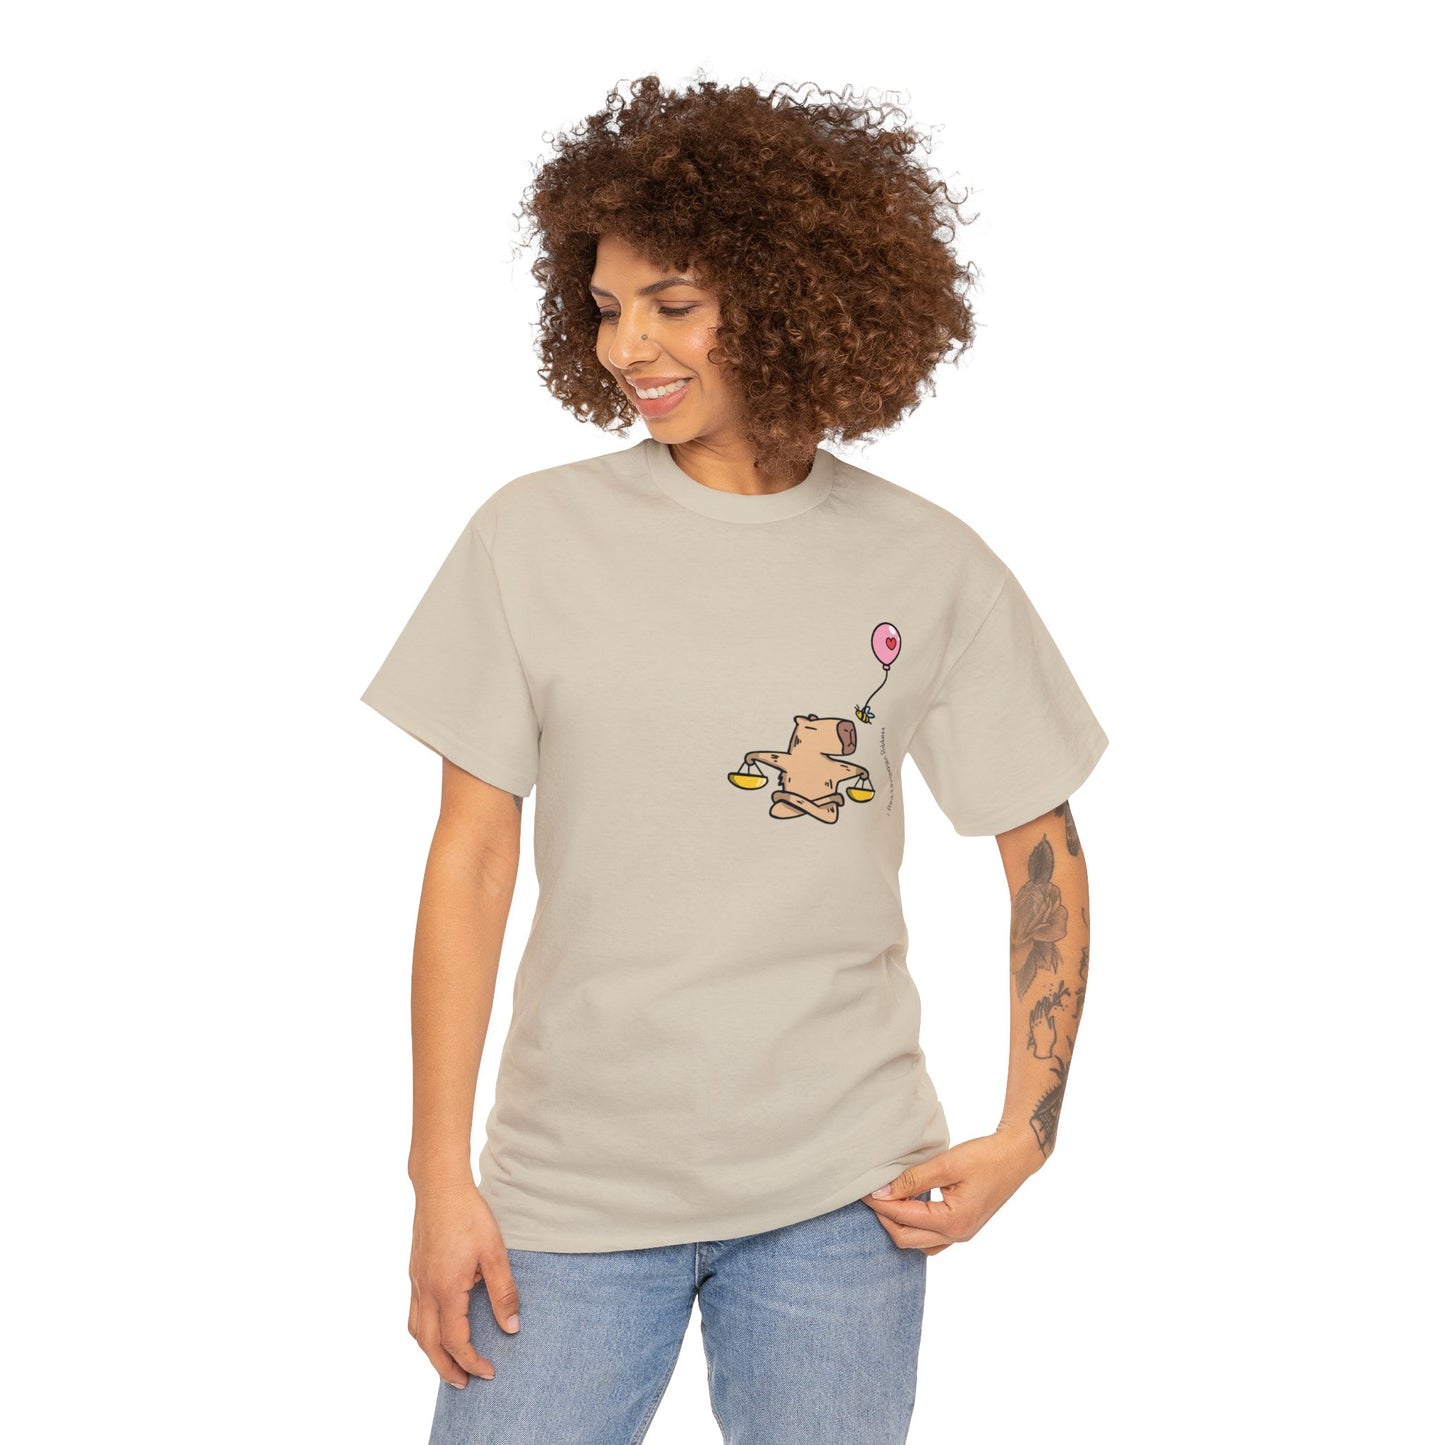 Libra T-shirt Women